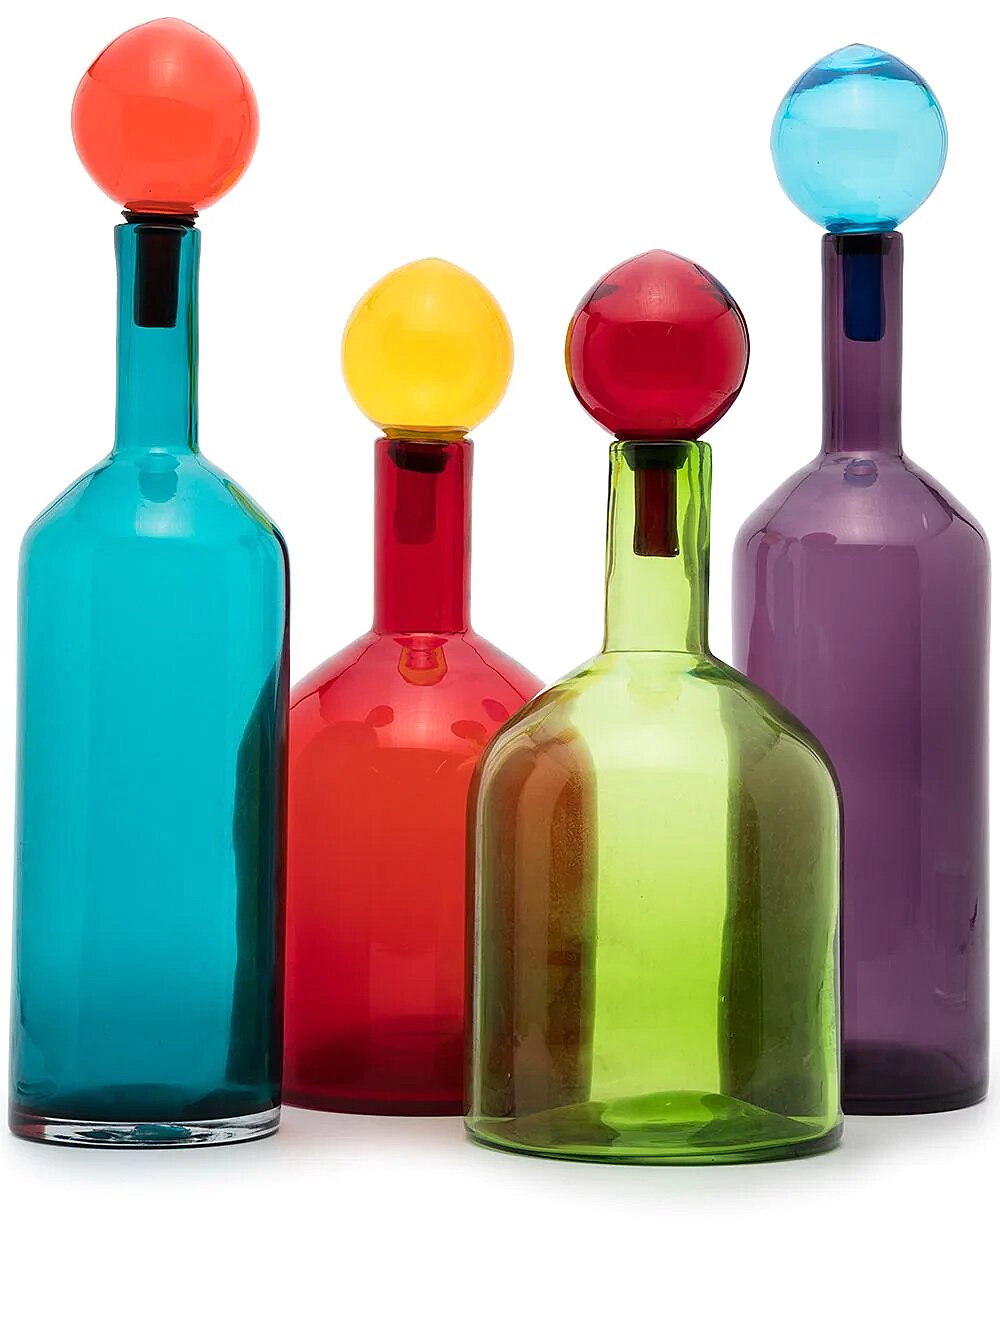 Набор из четырех декоративных бутылок Bubbles and Bottles 26 642 руб.